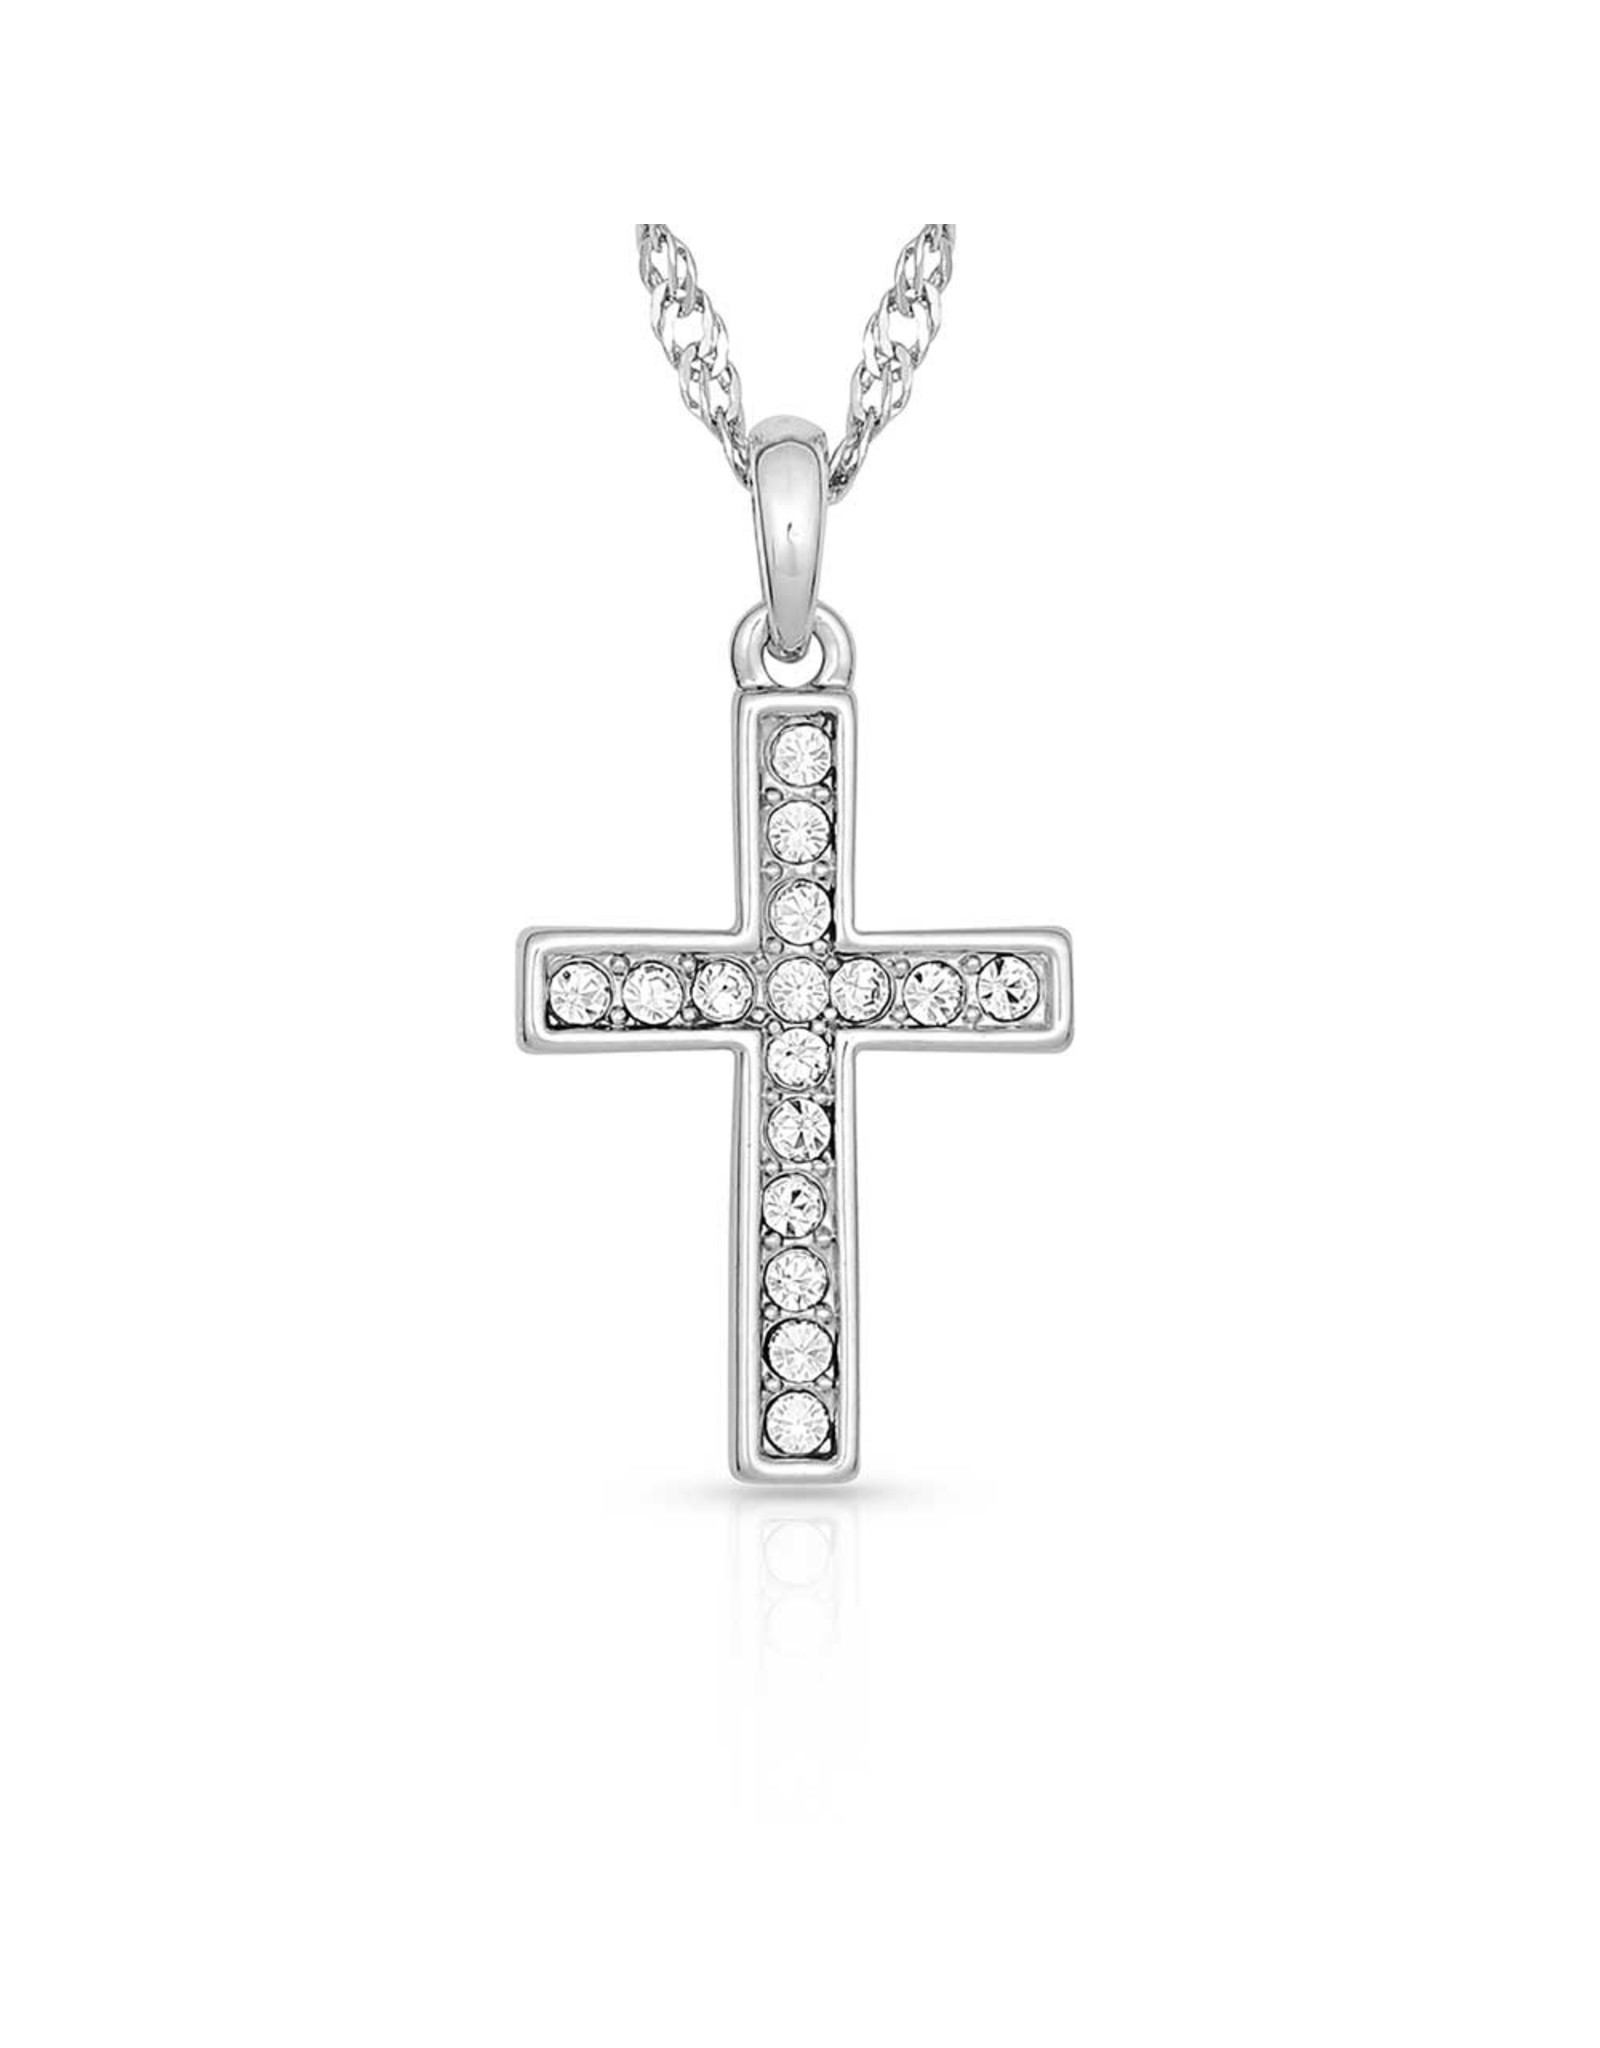 Montana Silversmiths Rhinestone Cross JS746 Jewelry Set